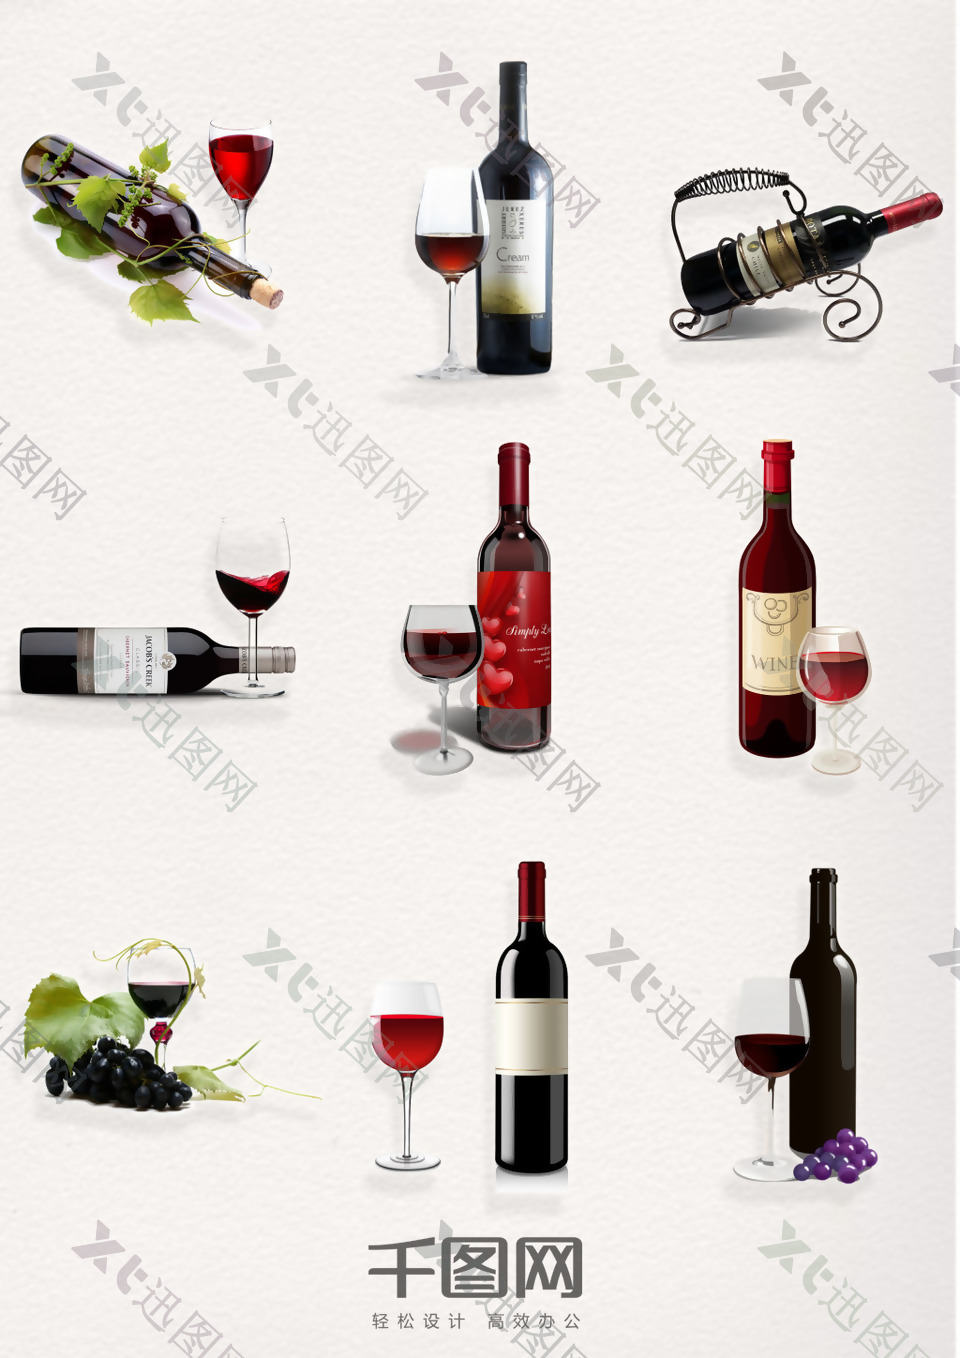 红酒瓶与酒杯元素图案